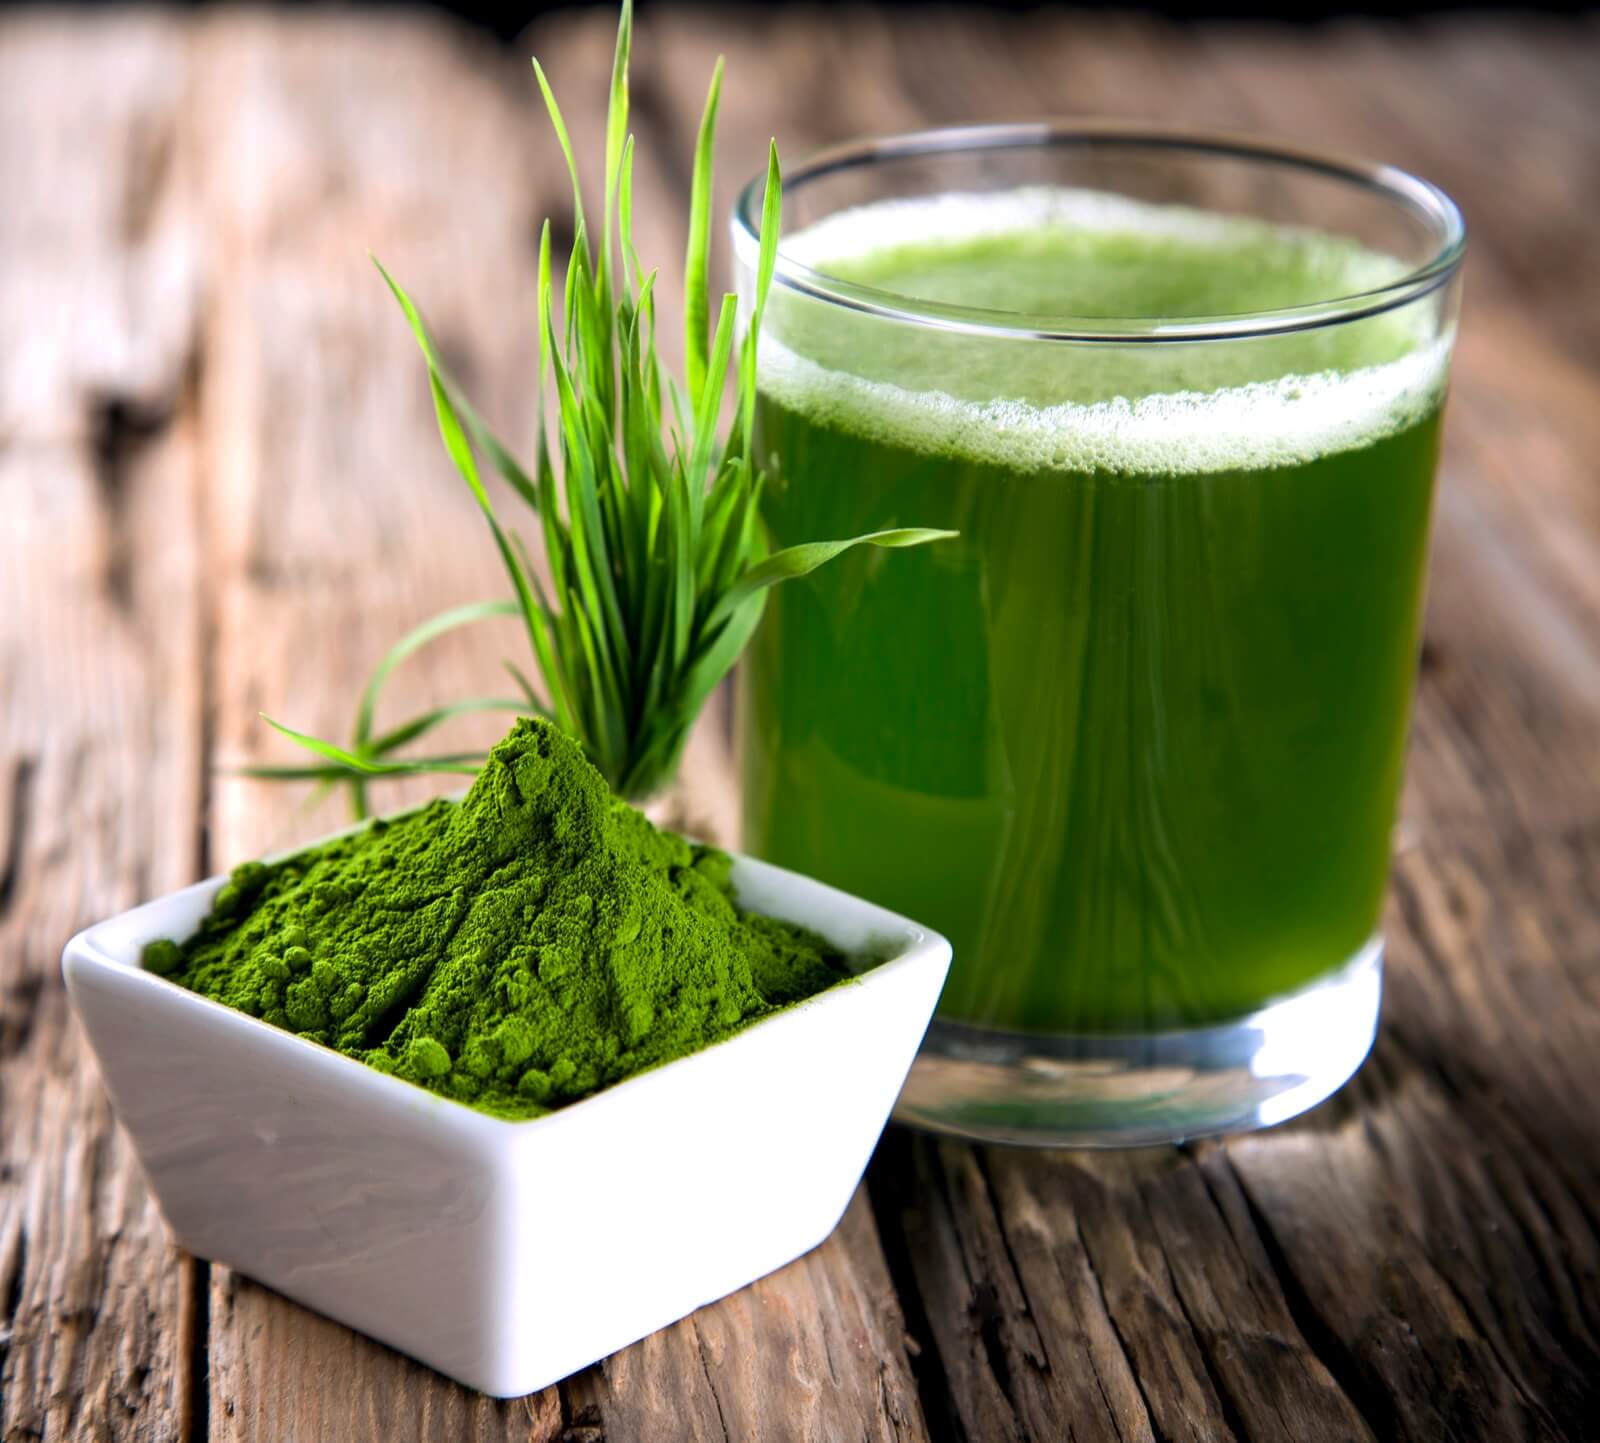 Bild zum Rezept mit Gerstengrassaftpulver und Glas mit grünem Saft, Visualisiert den Reichtum an Chlorophyll